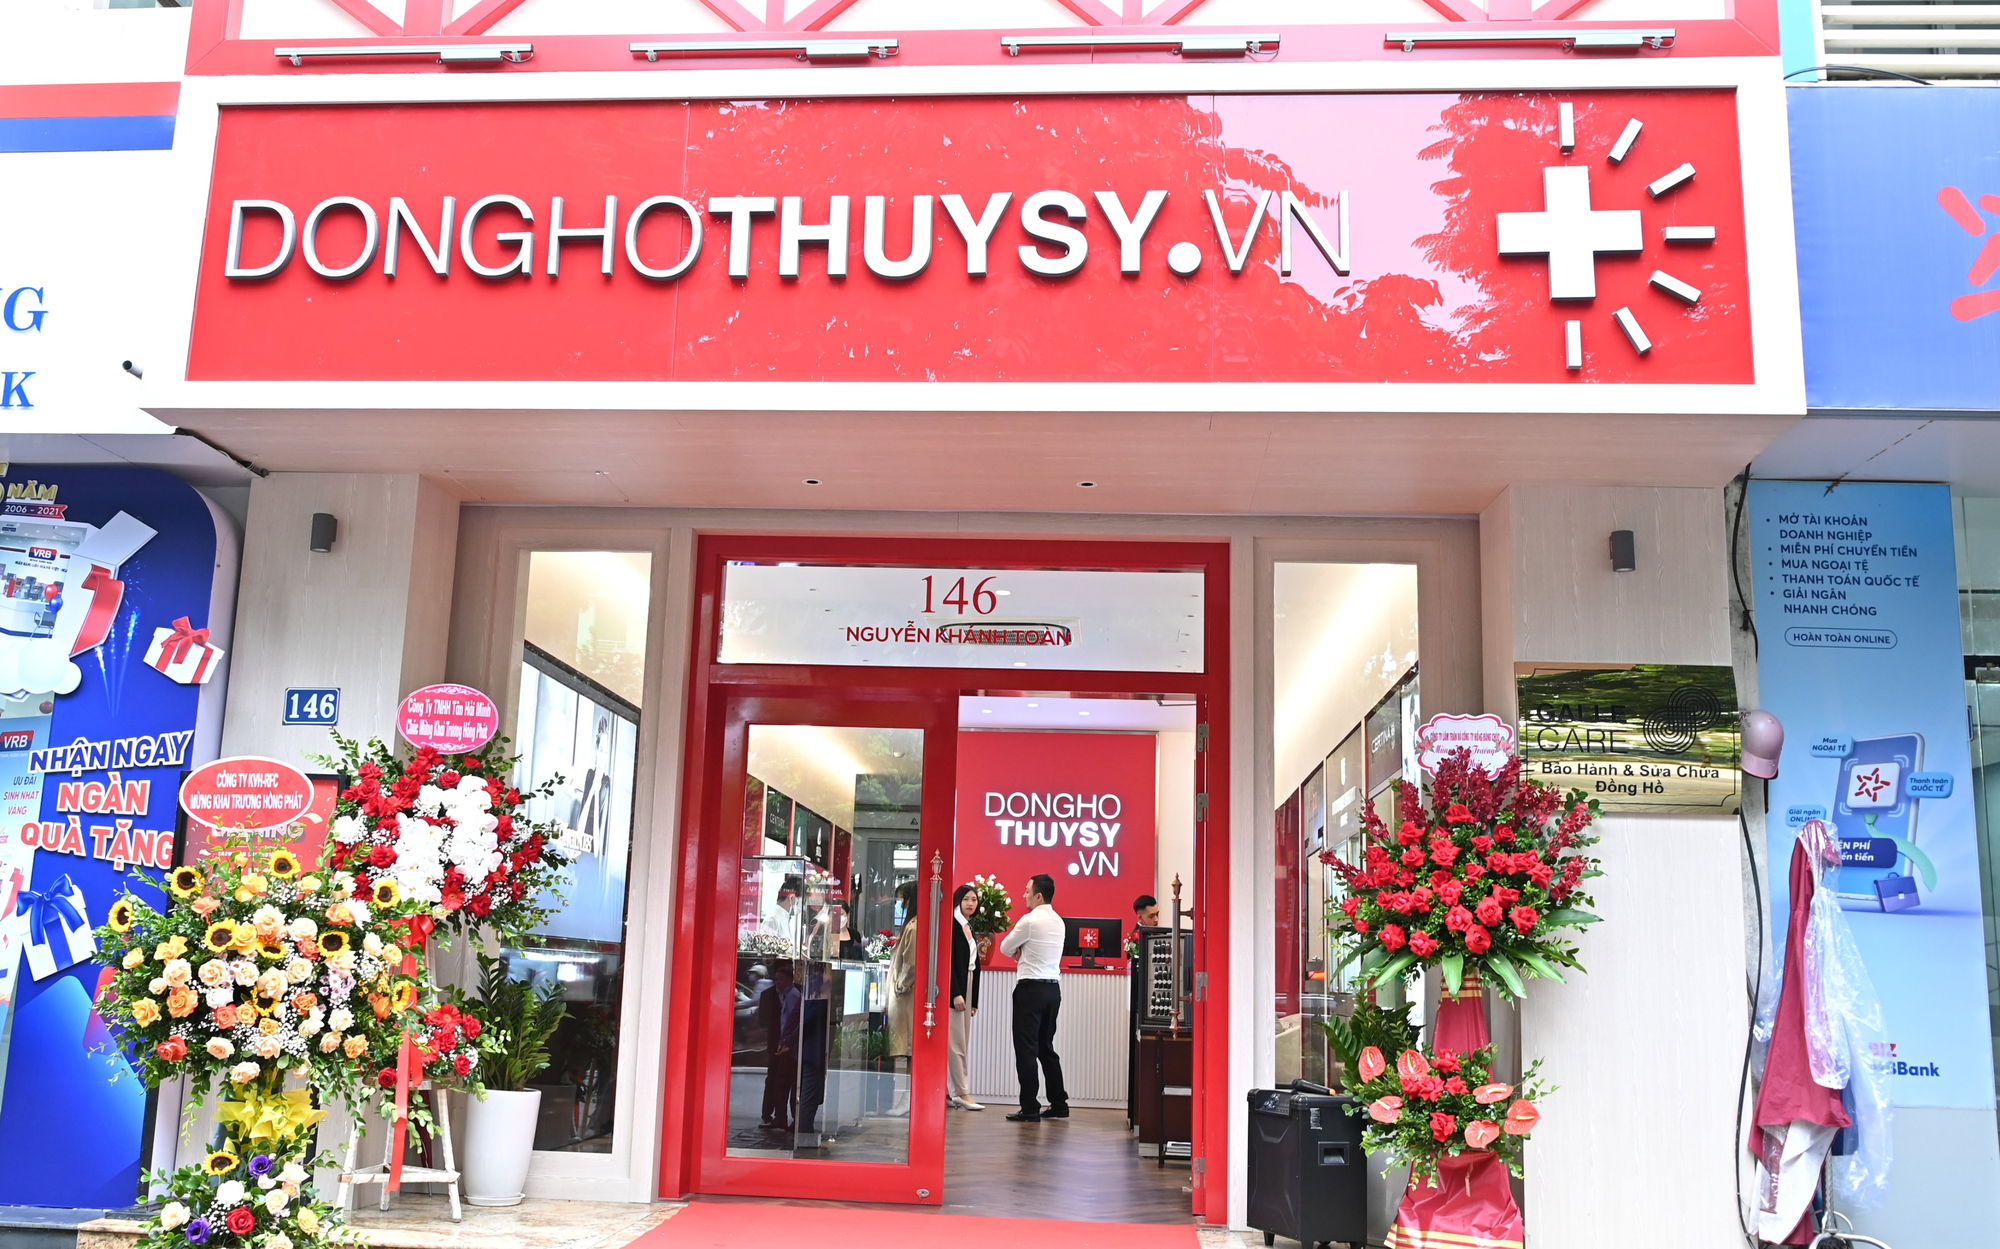 Donghothuysy.vn - nơi hội tụ các thương hiệu đồng hồ Thụy Sỹ lừng danh thế giới